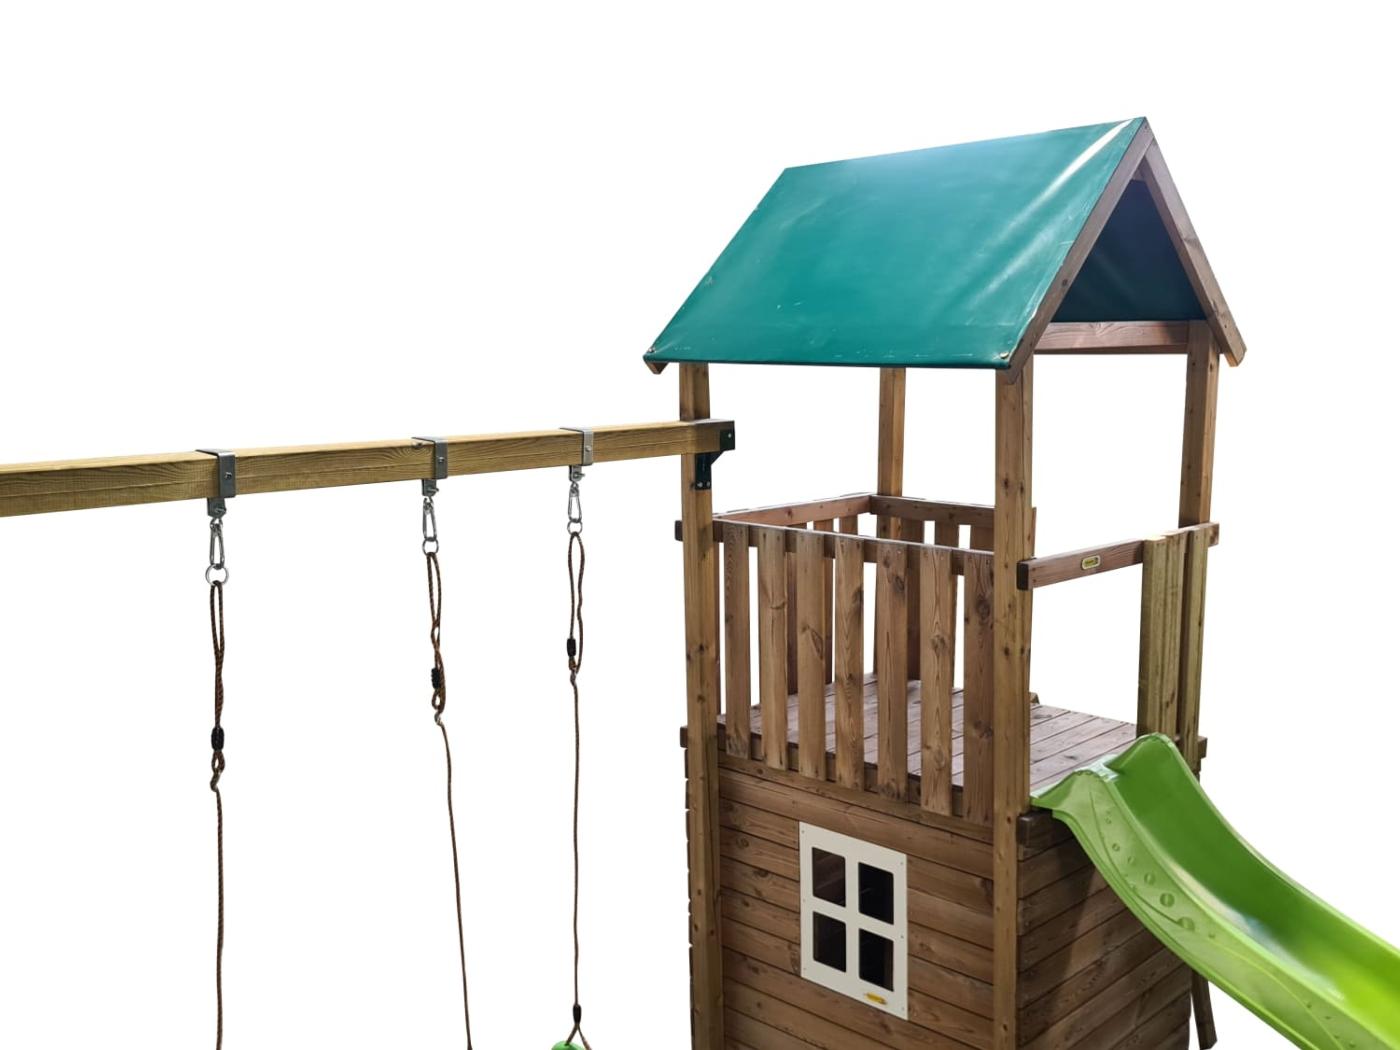 Parque infantil MASGAMES TIBIDABO torre de madera con tobogán, columpio y techo de lona verde